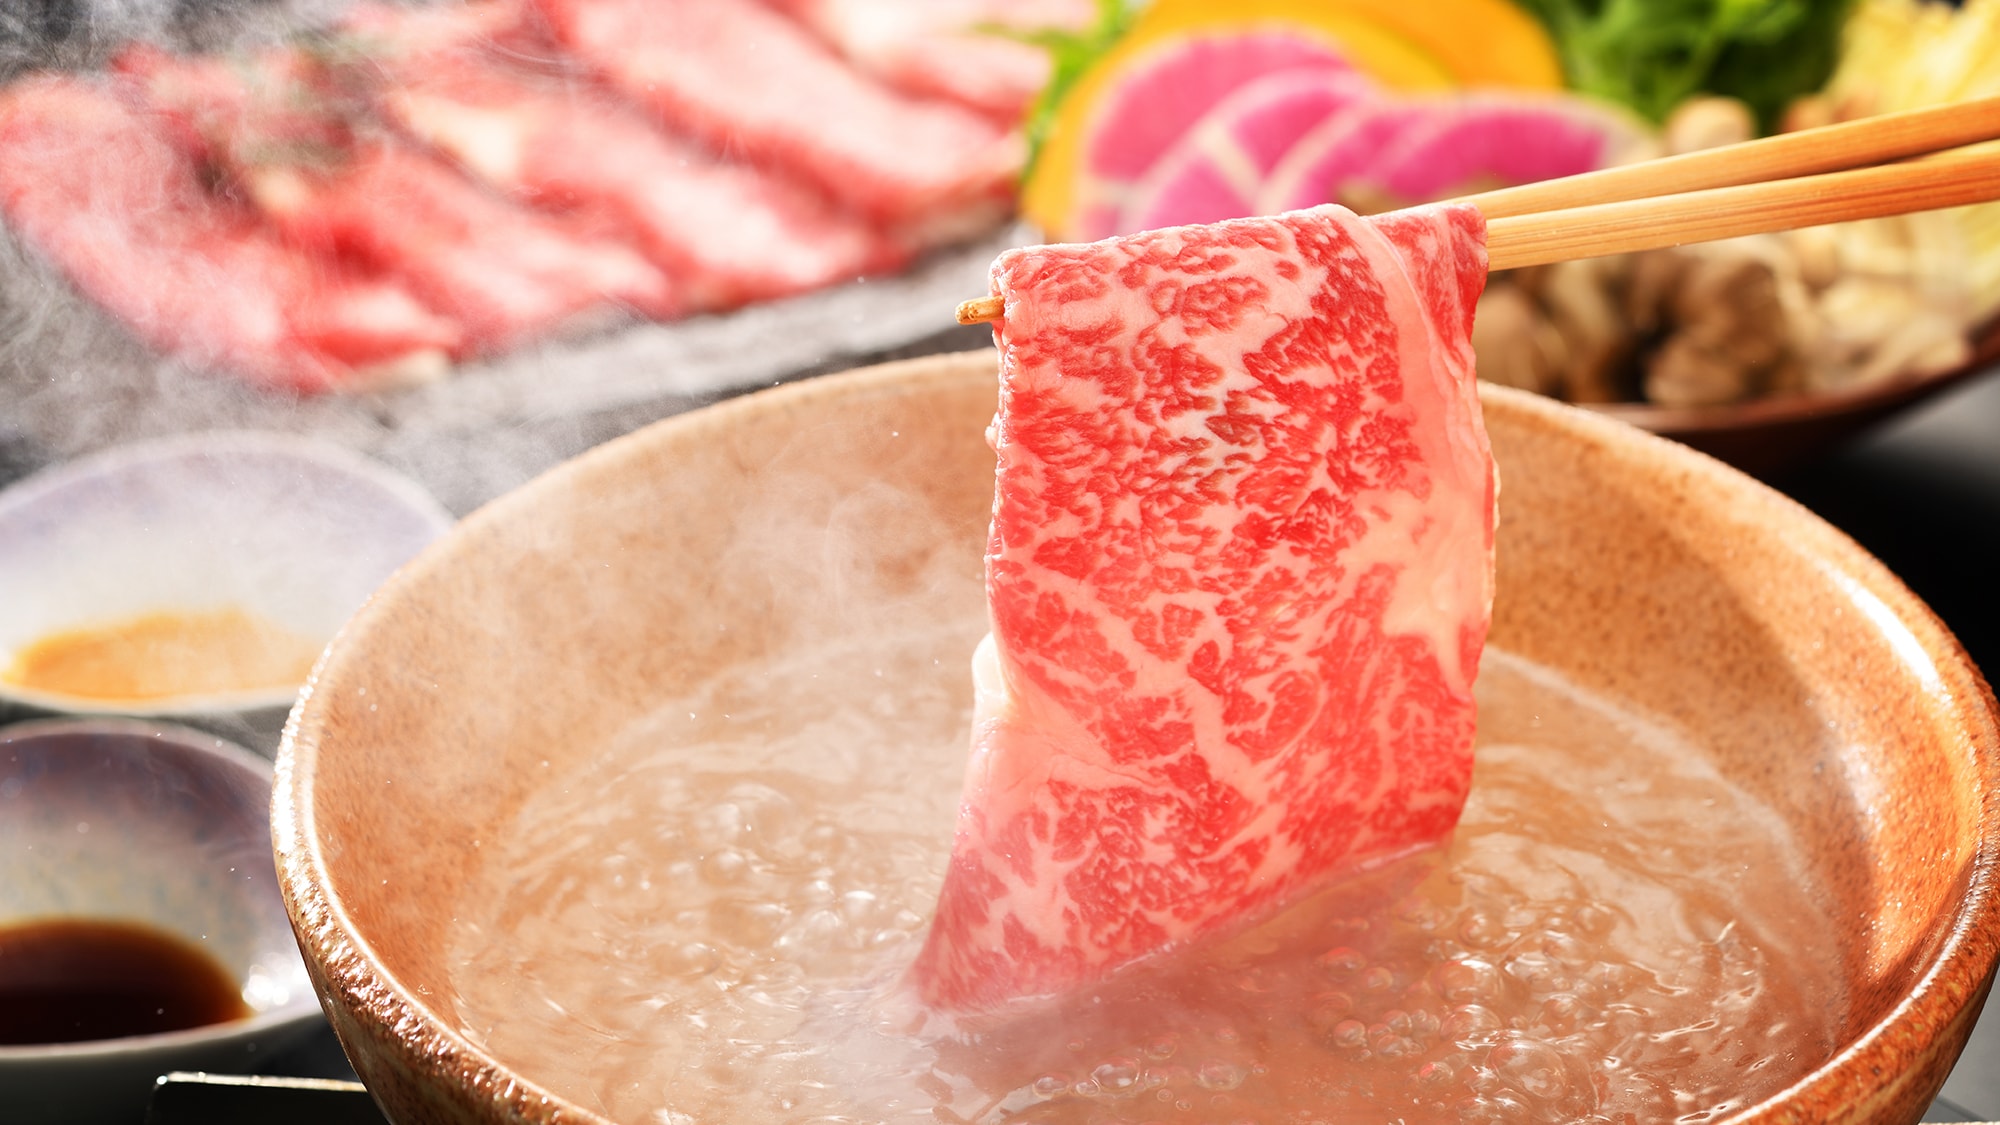 ■ 特色牛肉的涮涮鍋形象 ■ 廚師精心挑選的品牌牛肉。快速沉浸在高湯中，享受肉的原汁原味